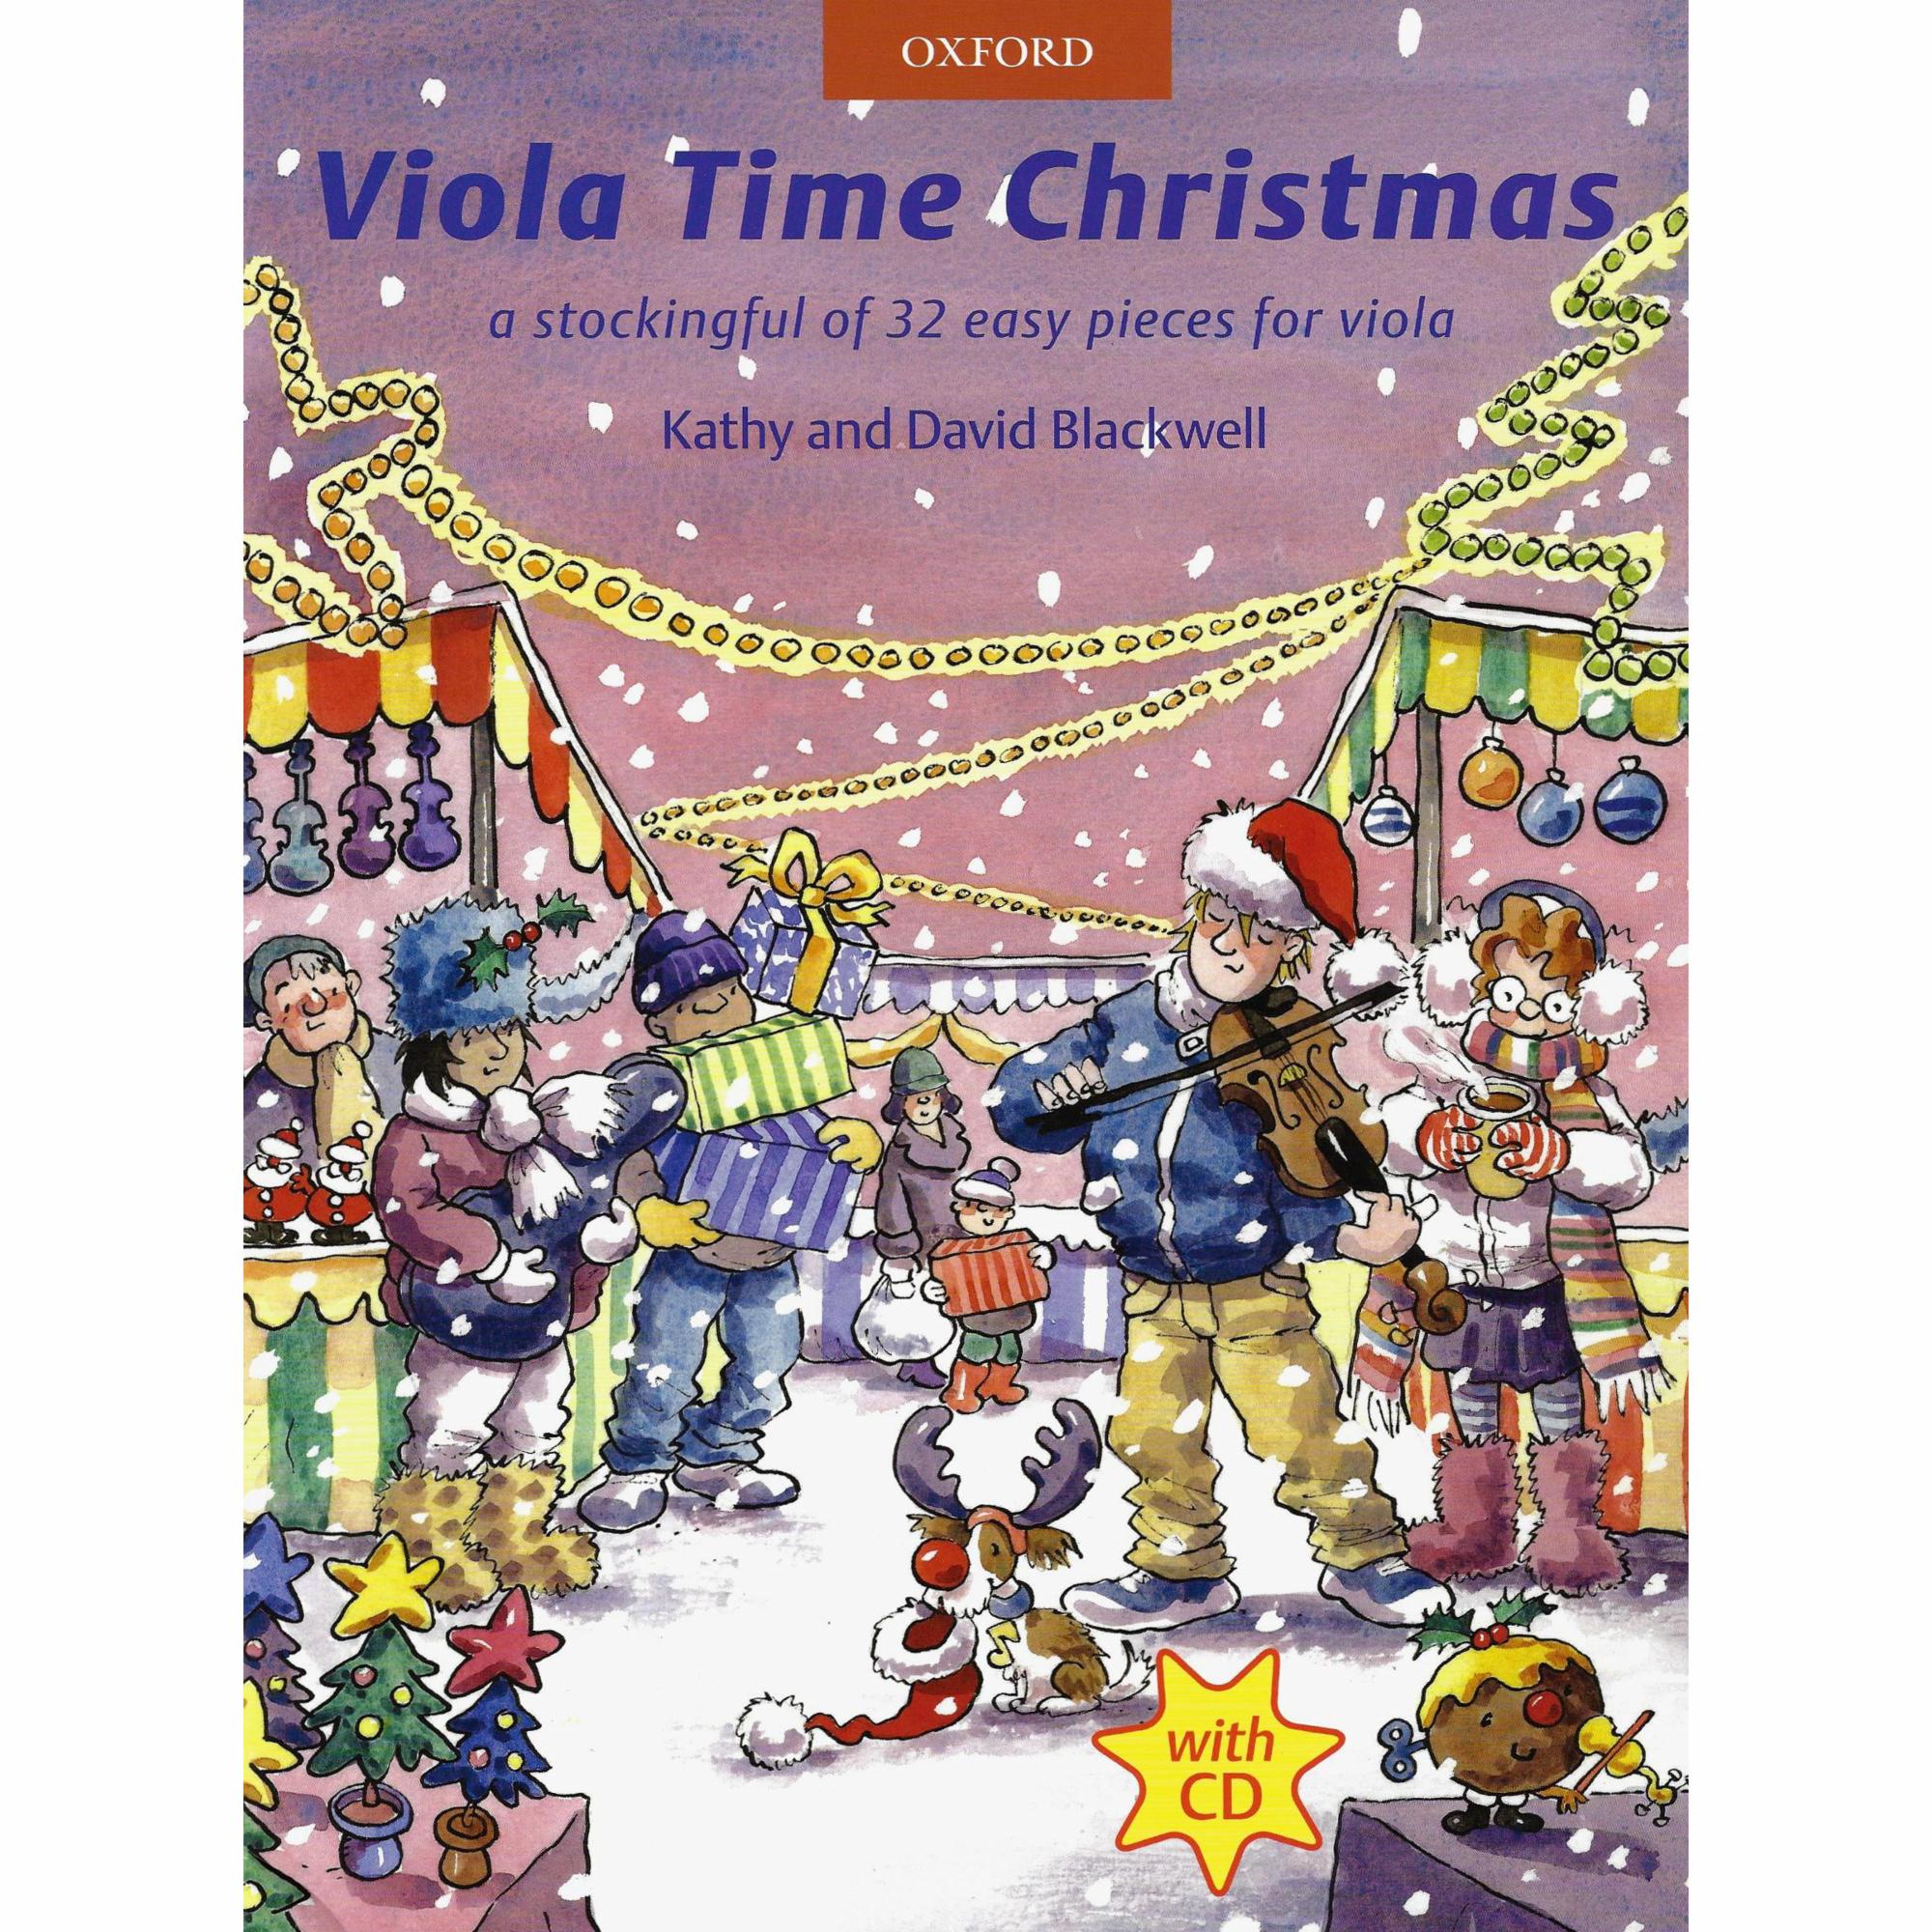 Viola Time Christmas